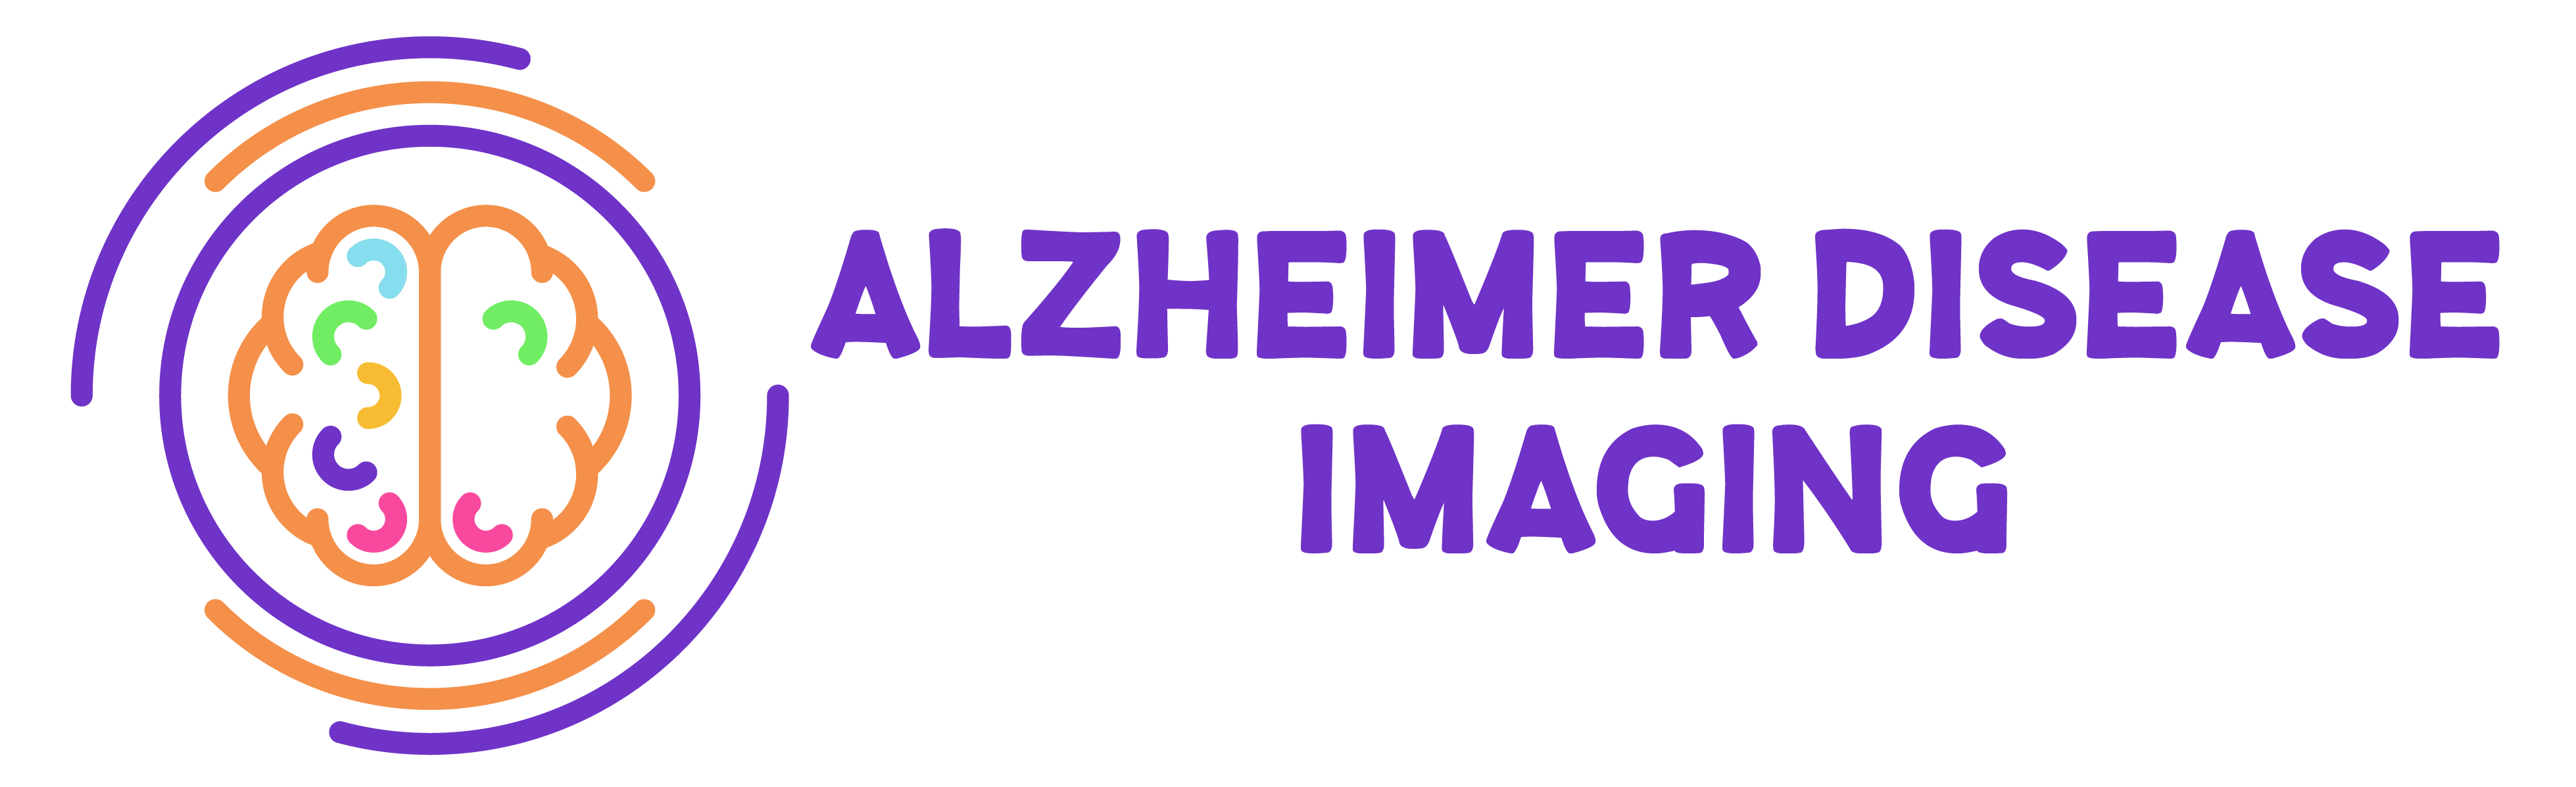 Alzheimer Disease Imaging New Jersey